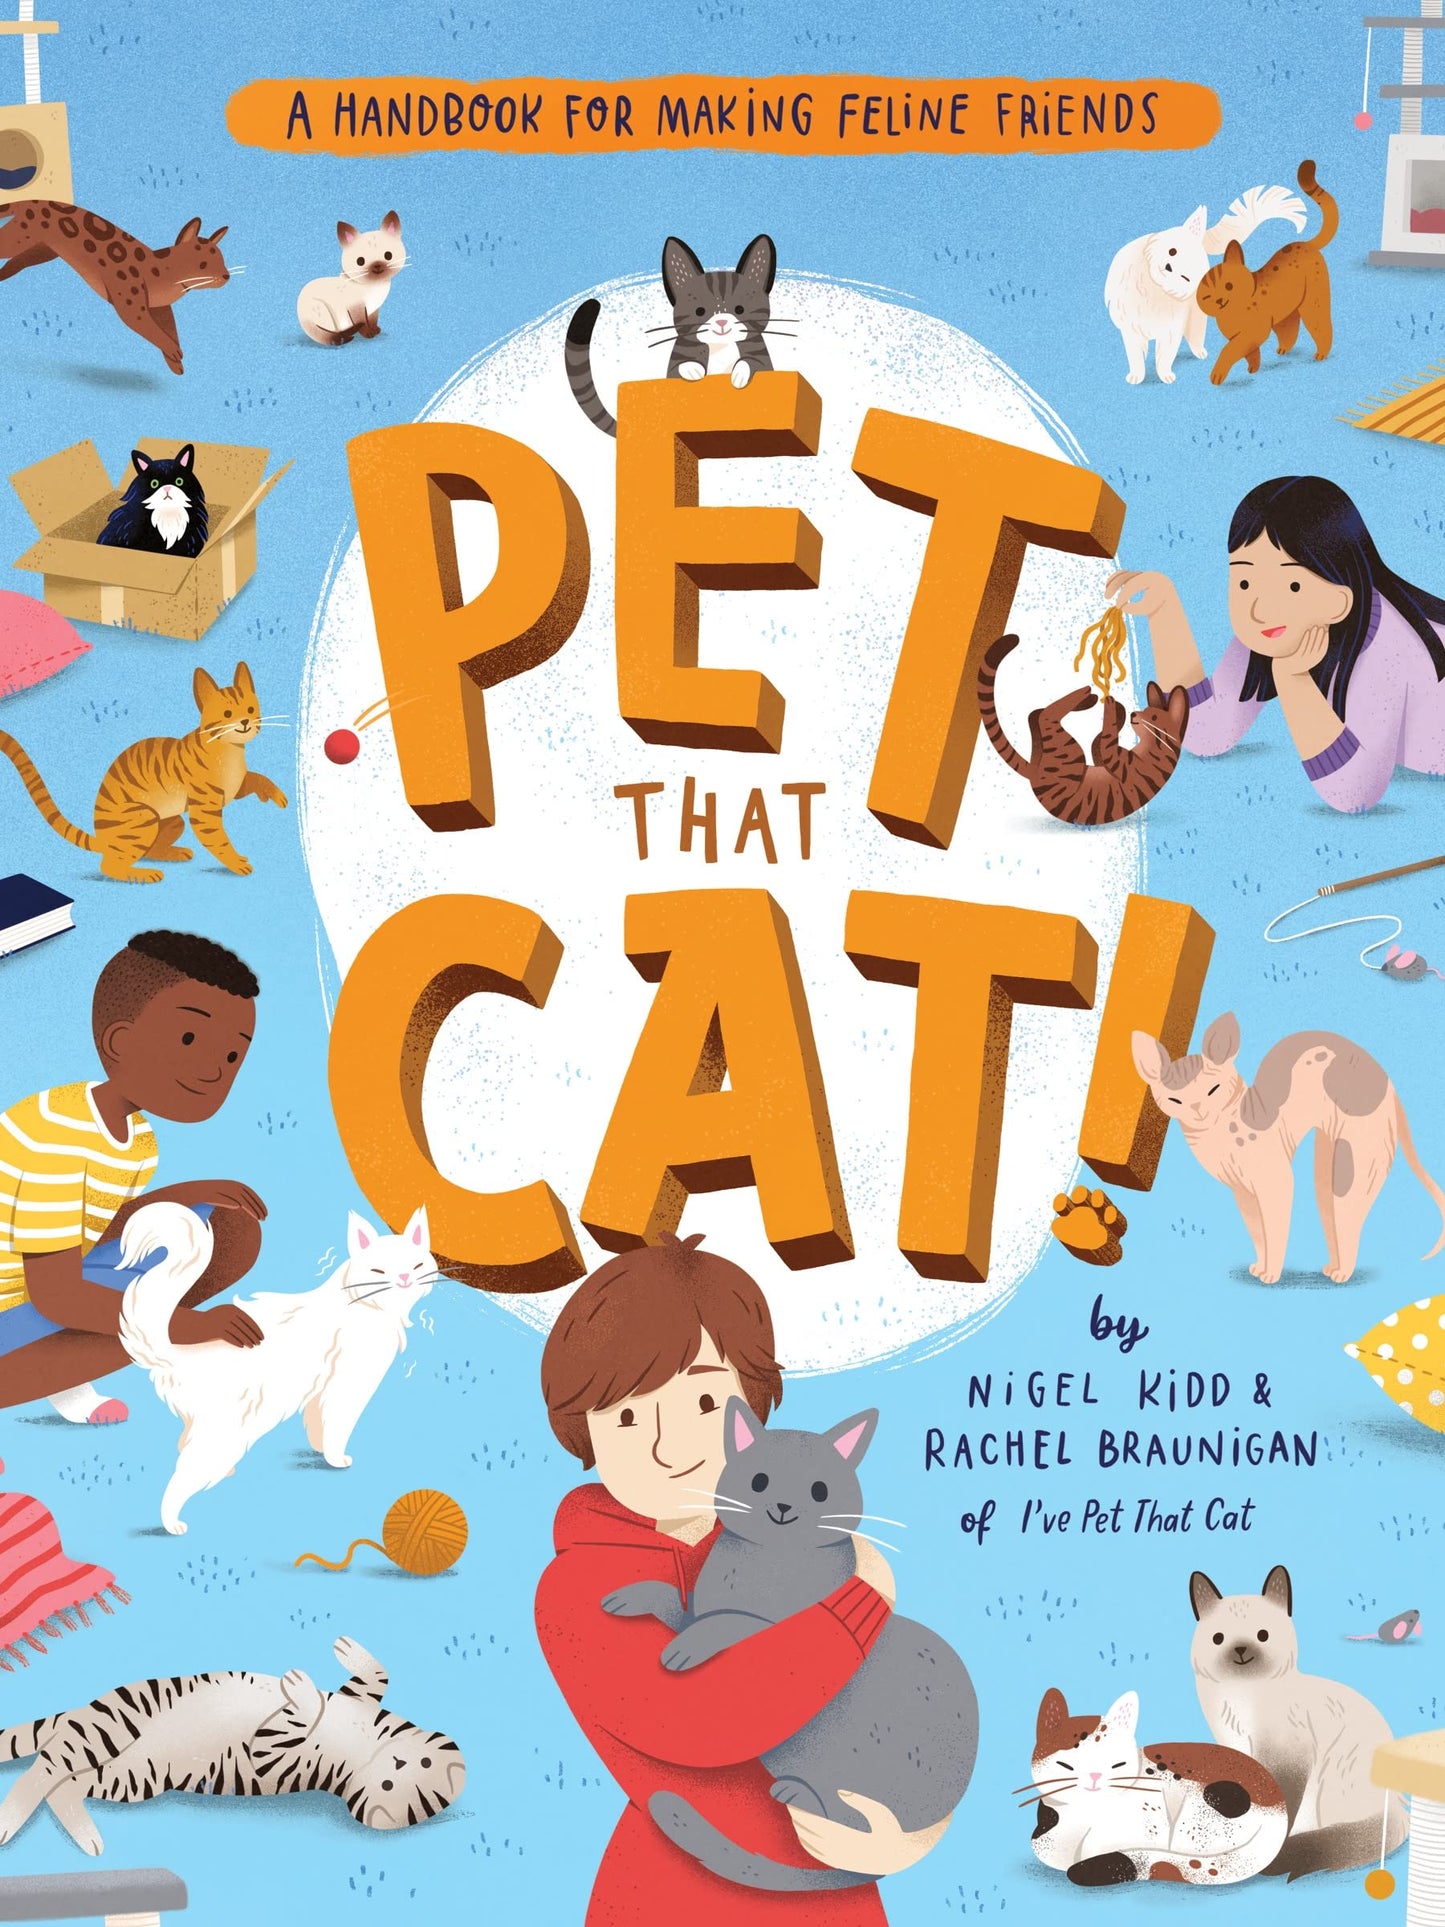 Pet That Cat! A Handbook for Making Feline Friends by Nigel Kidd